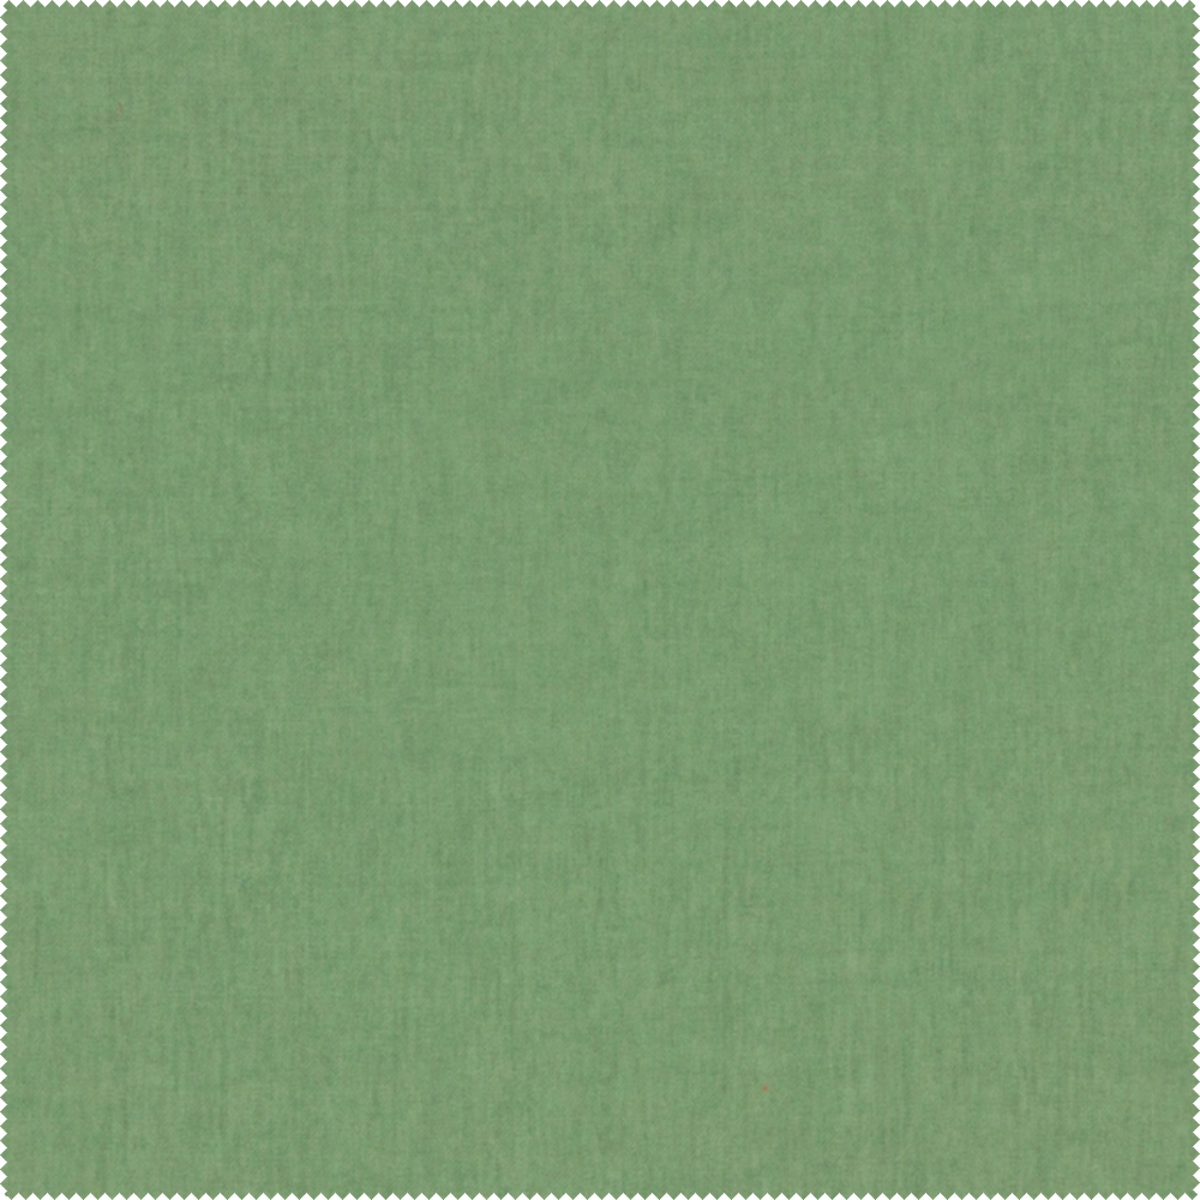 Wyjątkowa tkanina Mystic 387 Aquaclean w kolorze jasnej zieleni. Ciekawa struktura i intrygujący splot.